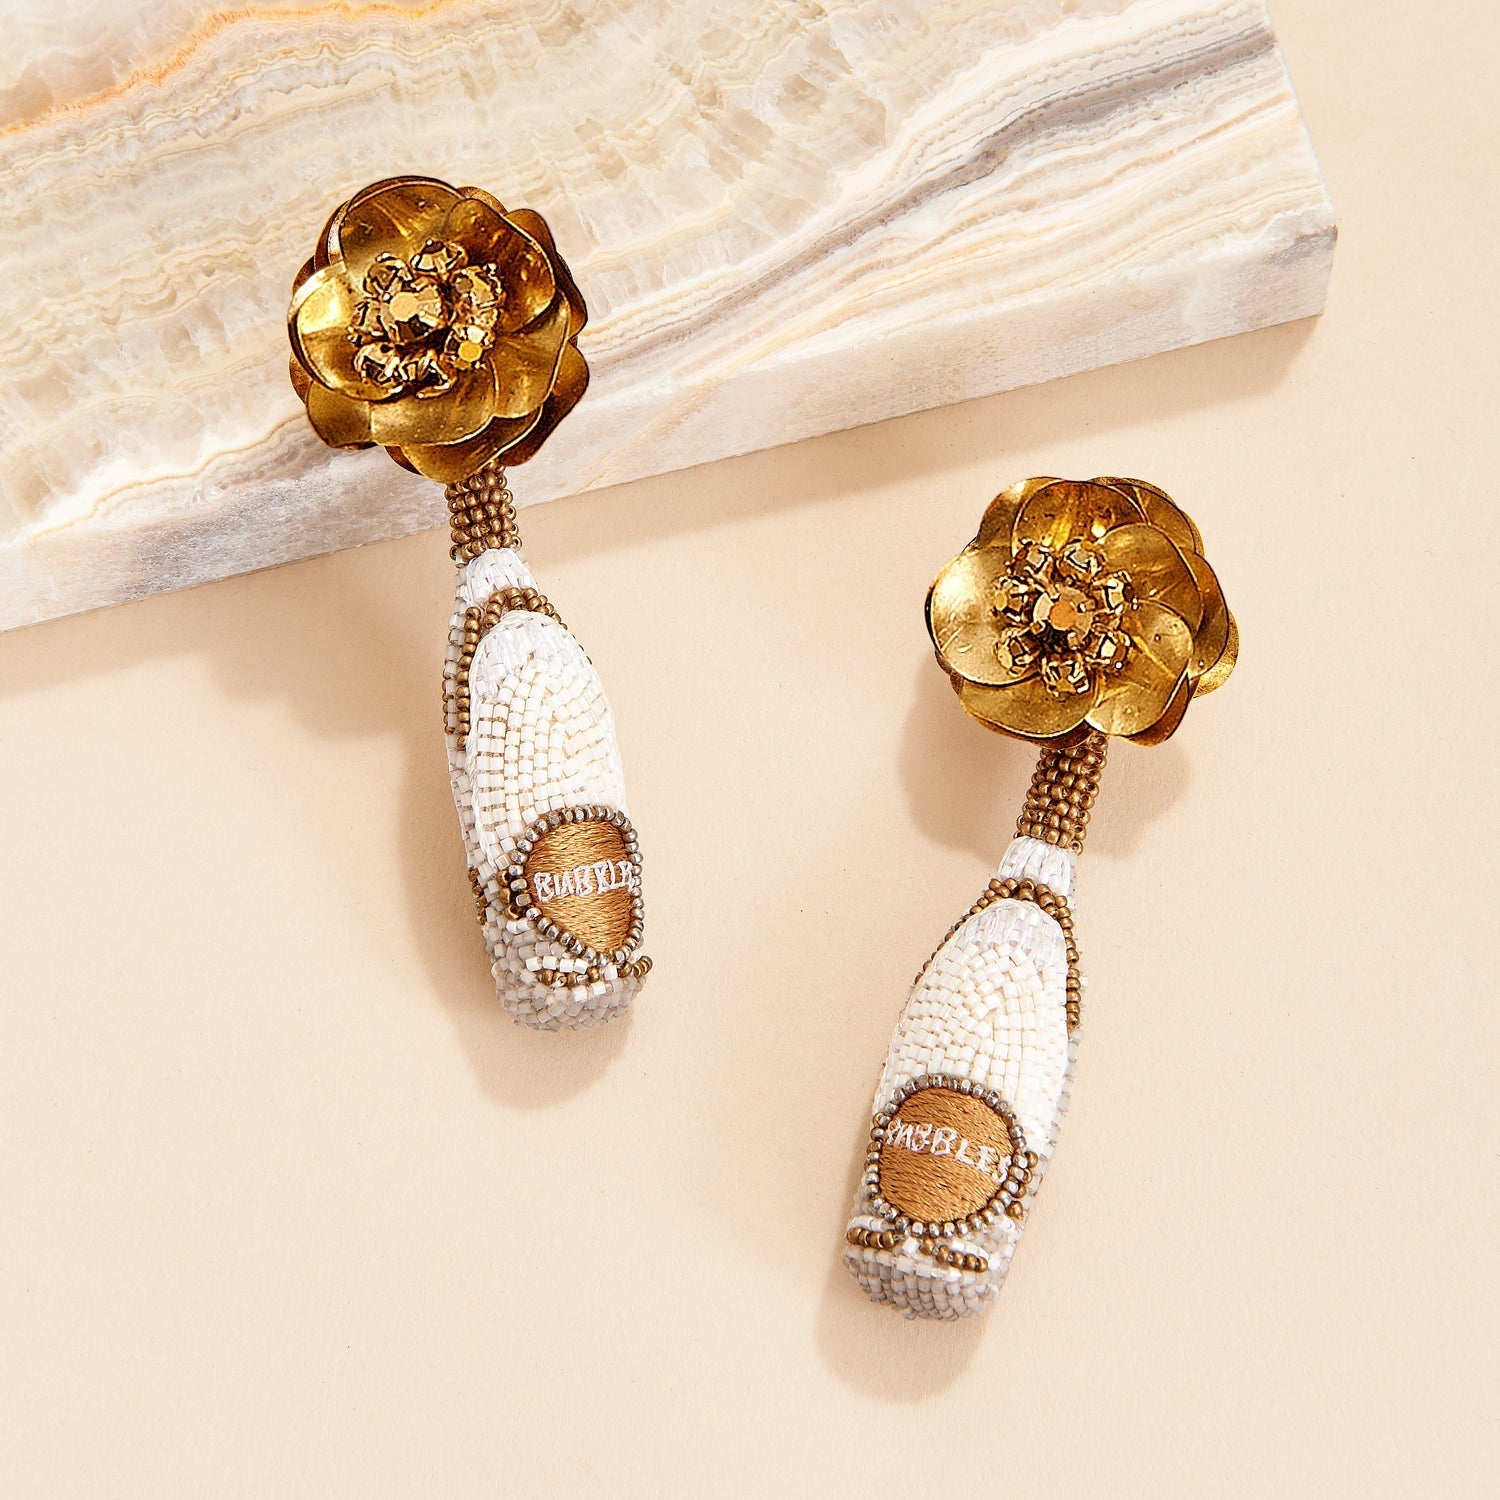 Prosecco Earrings Gold by Mignonne Gavigan